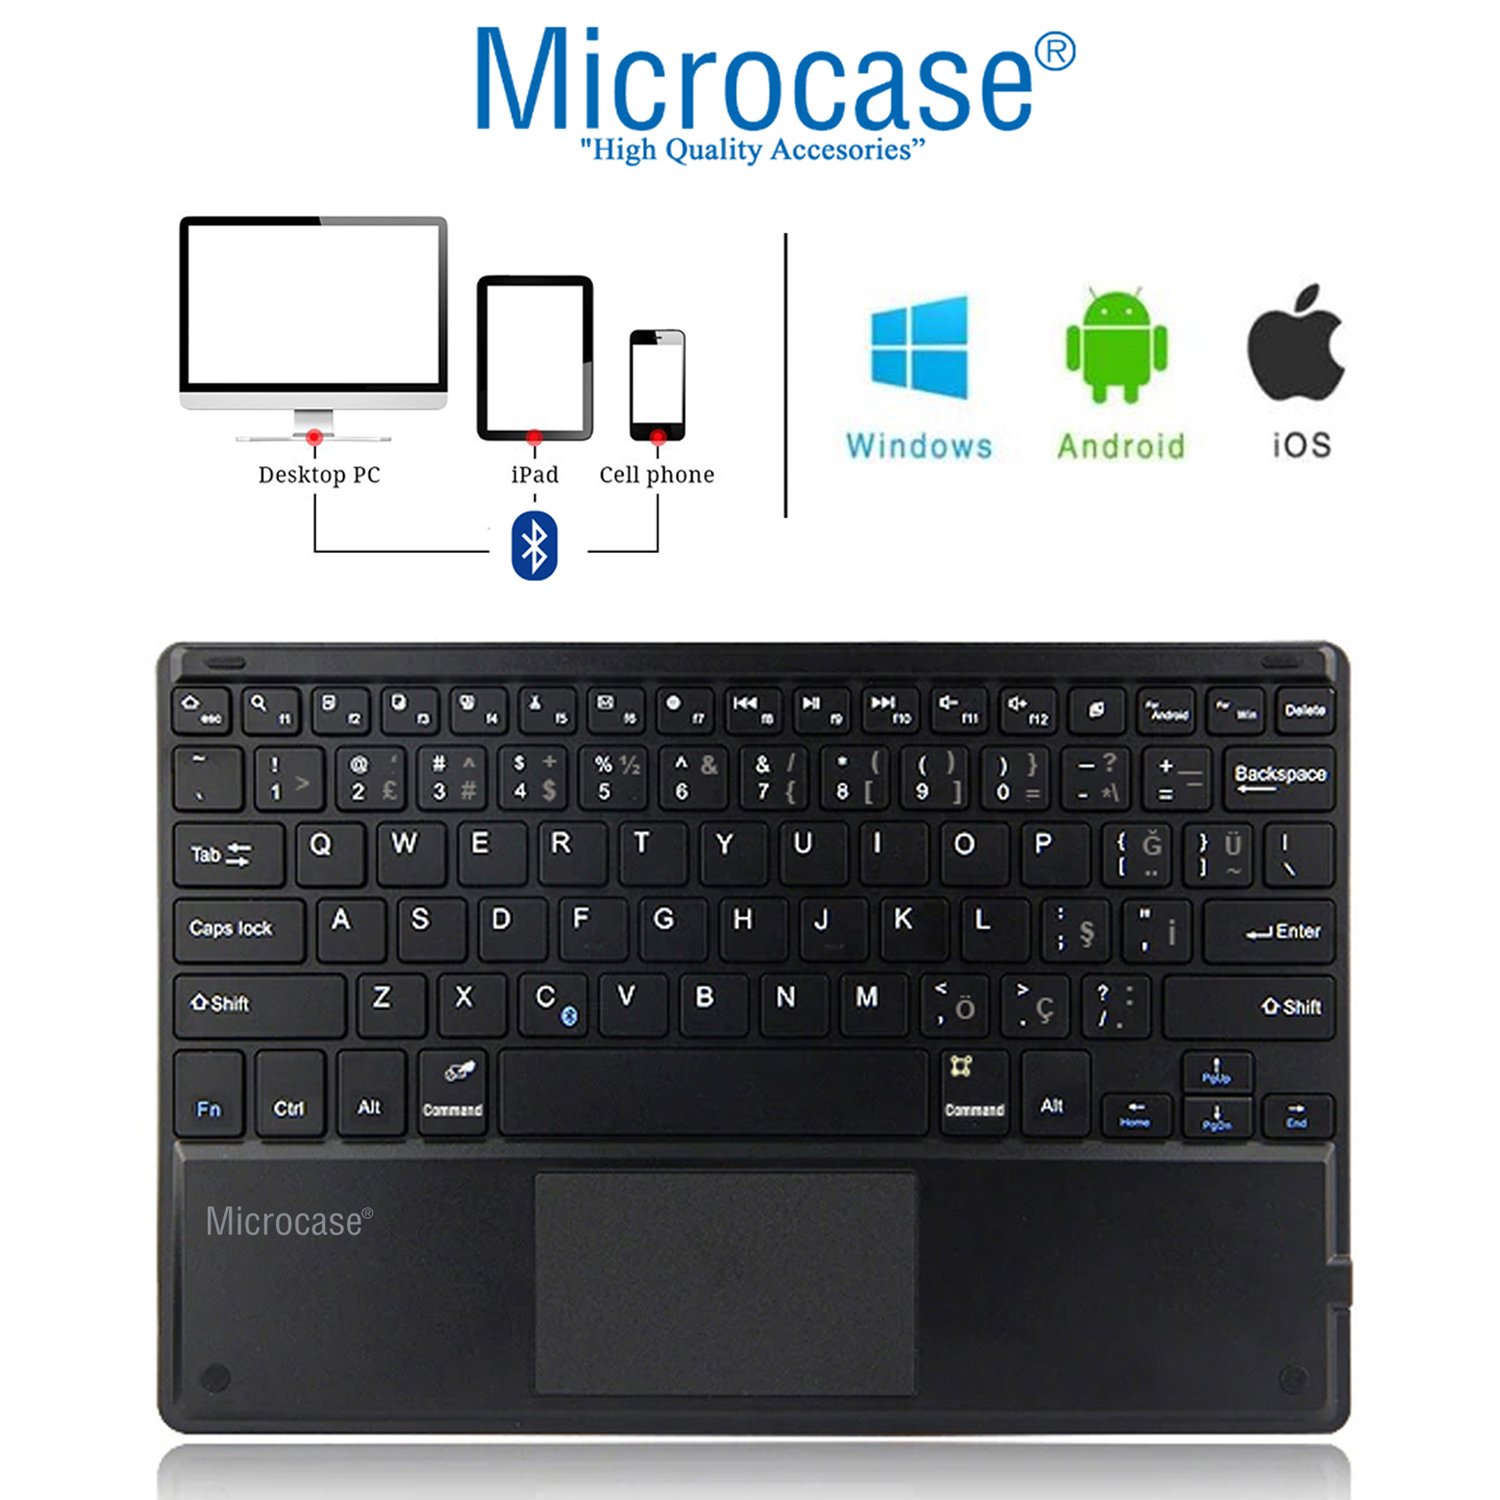 Microcase Tablet ve Telefonlar Için Şarjlı Touchpadli Türkçe Bluetooth Klavye 25 cm - AL2746 Siyah